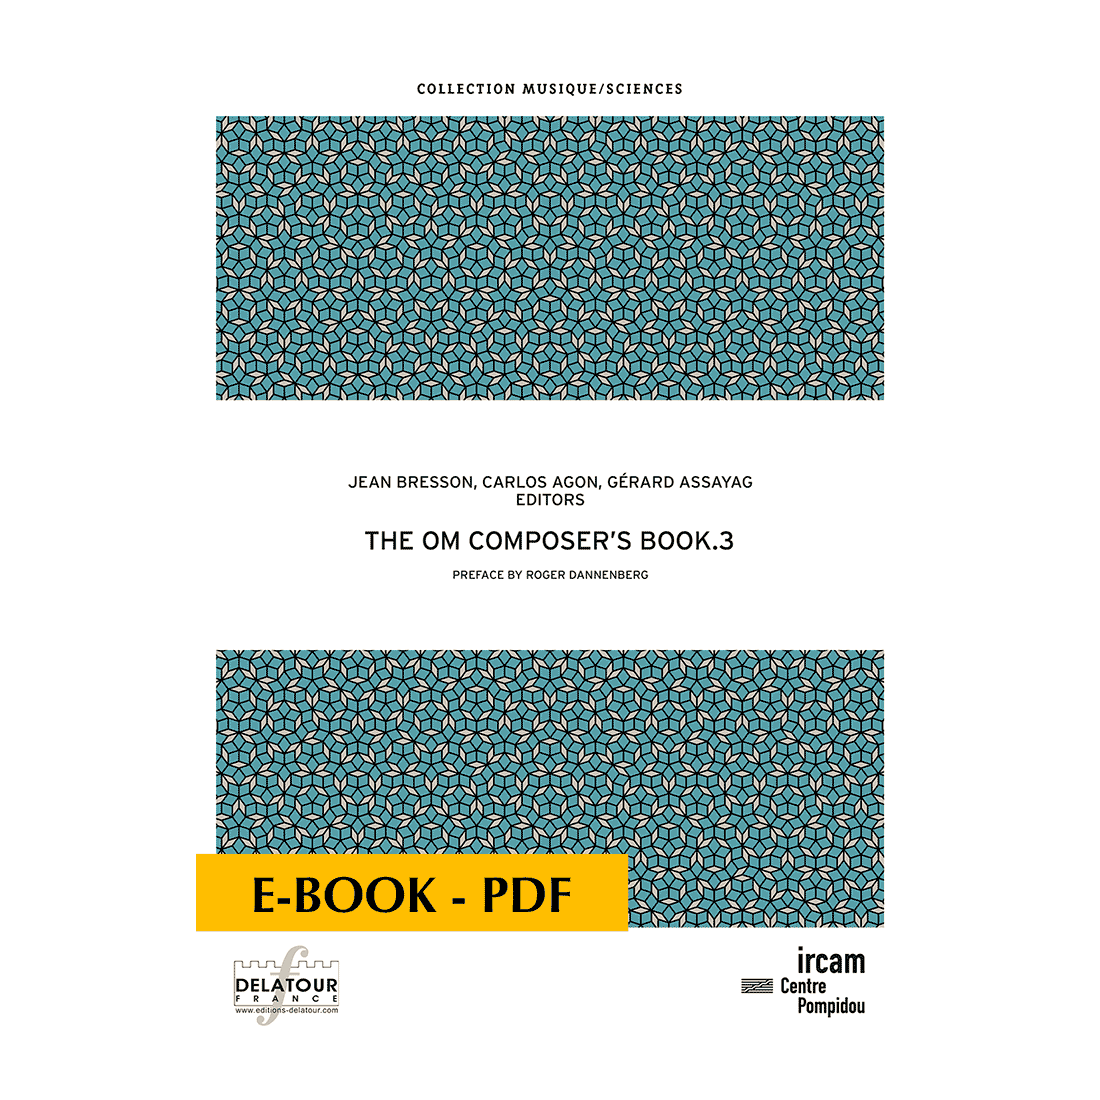 The OM Composer's book 3 - E-book PDF